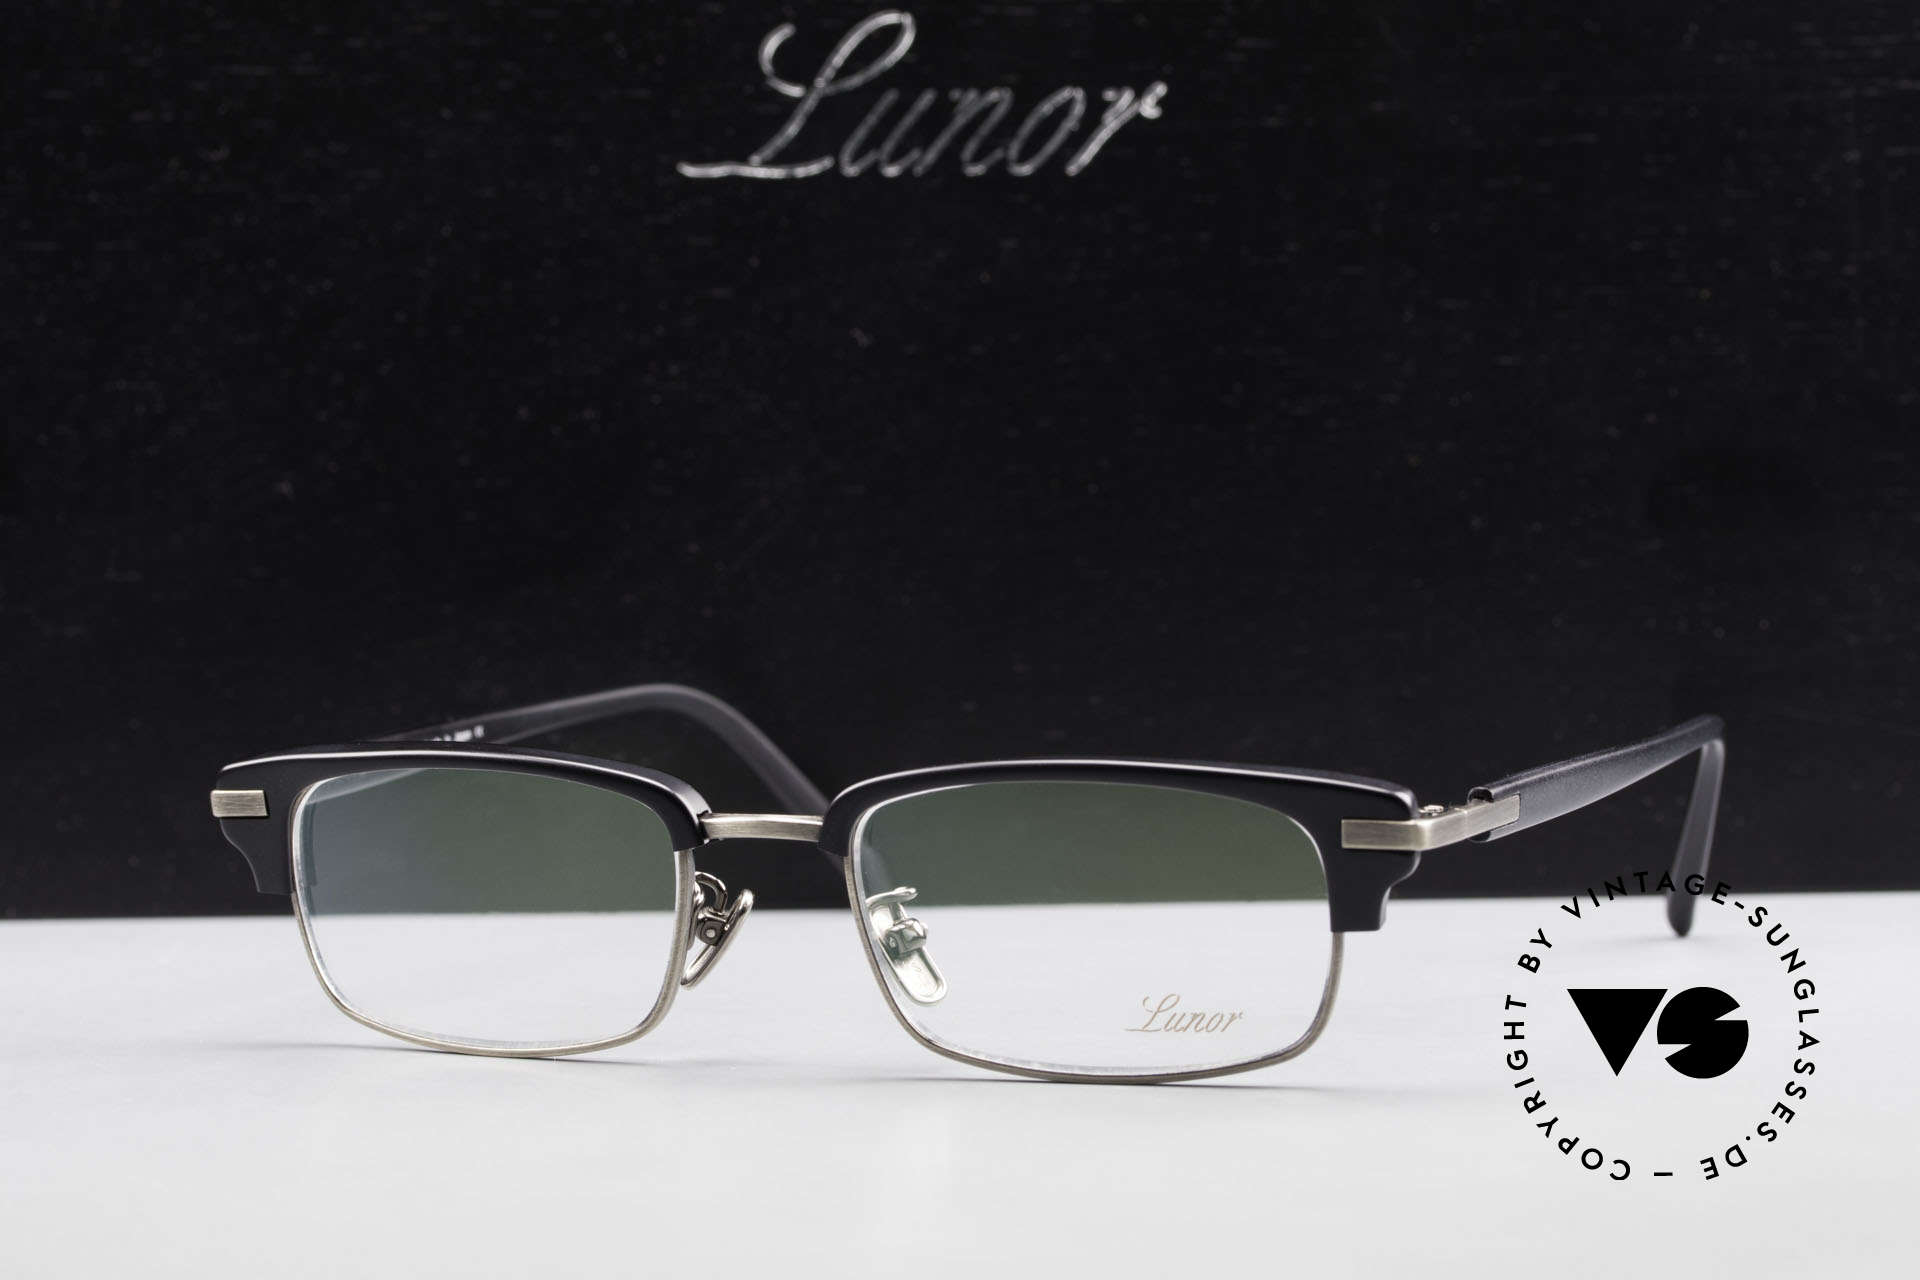 Lunor Combi II Mod 80 Combi Titanium Eyeglasses, Size: medium, Made for Men and Women